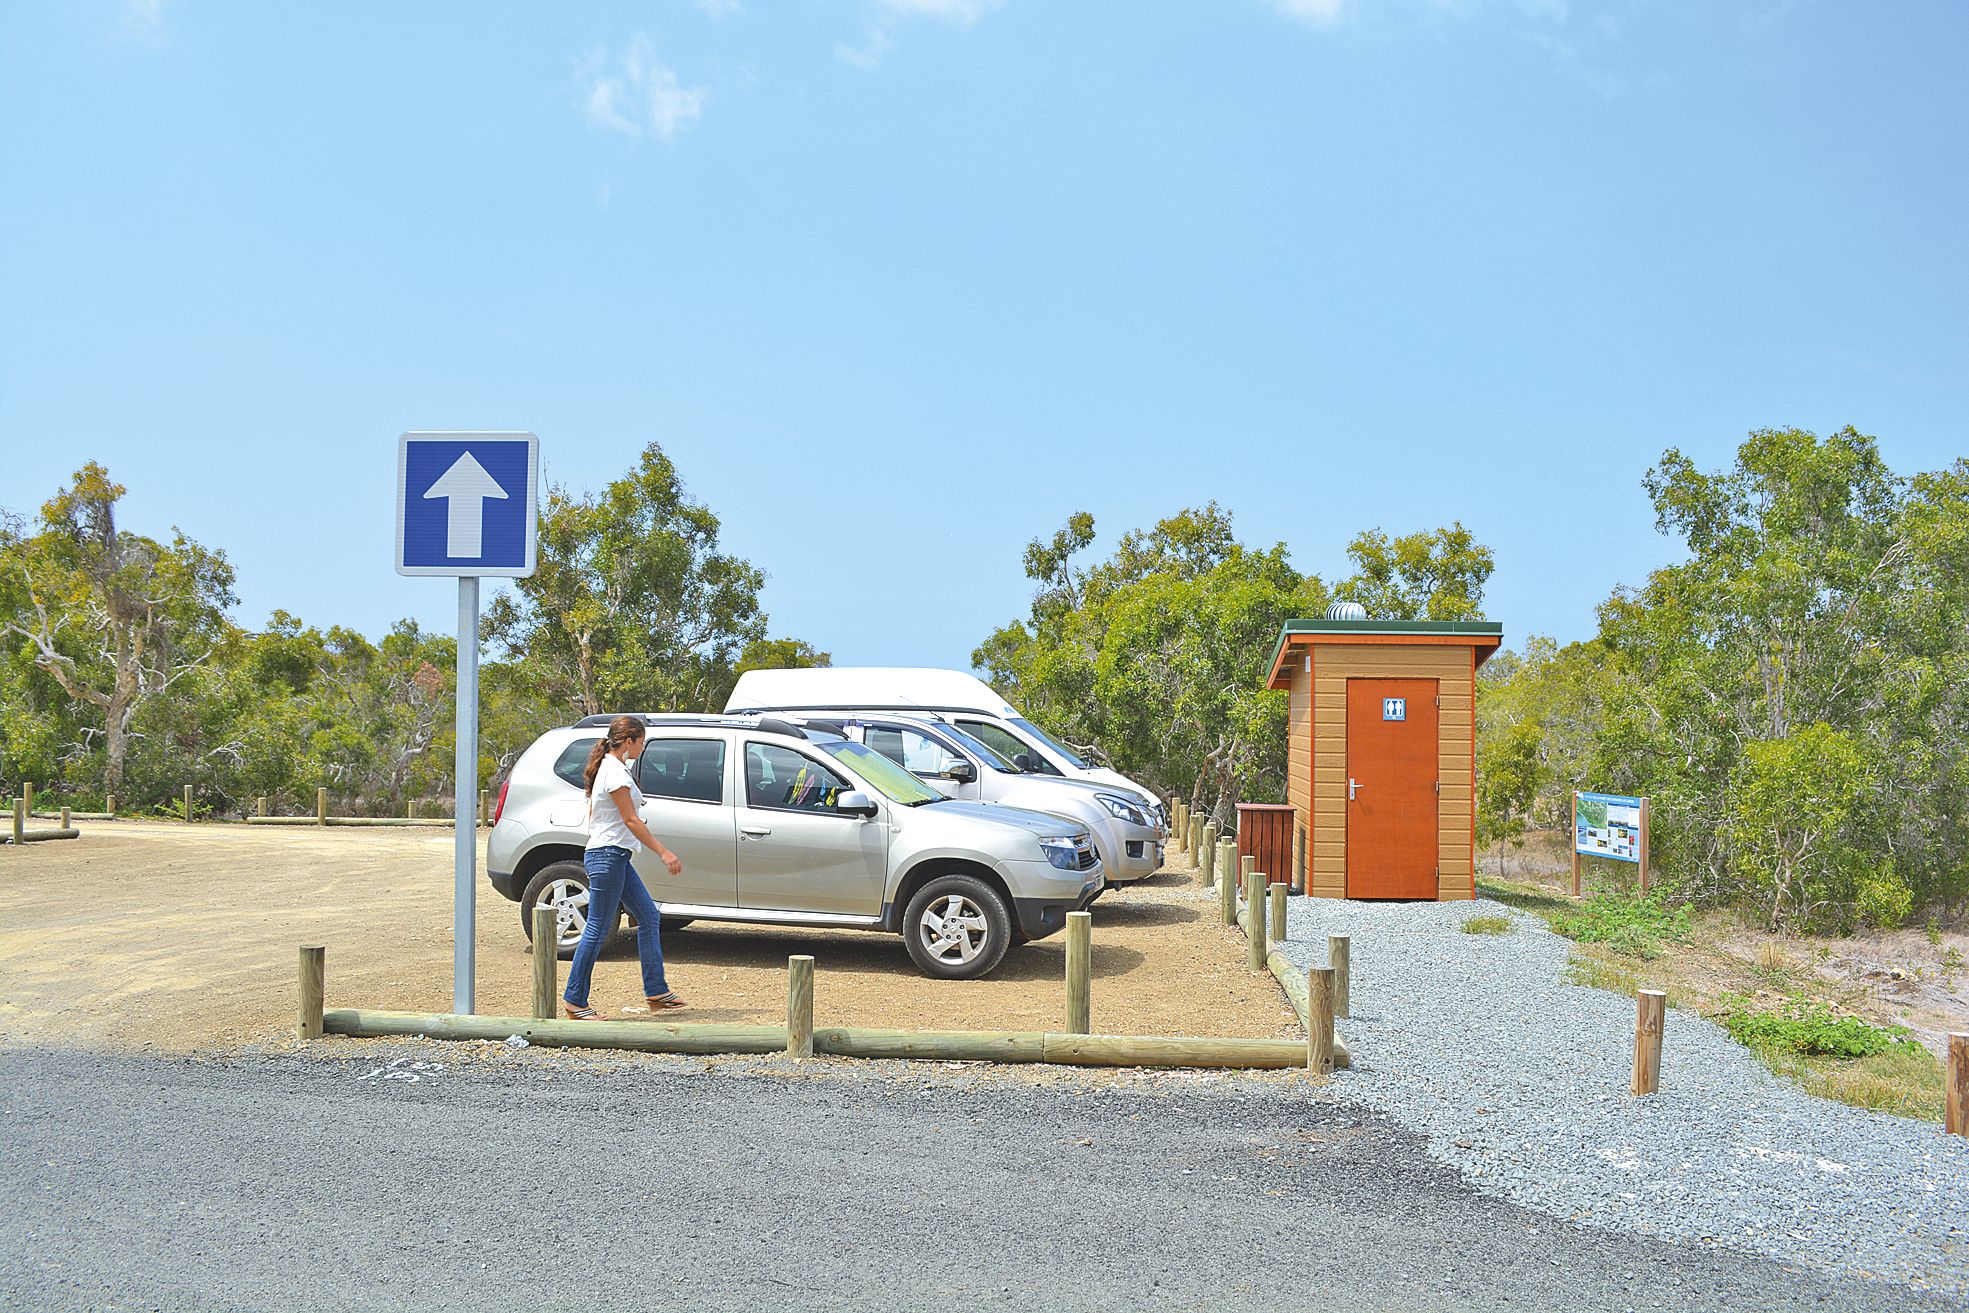 Le parking sécurisé et les toilettes sèches, un plus pour les visiteurs qui se rendent sur le domaine.